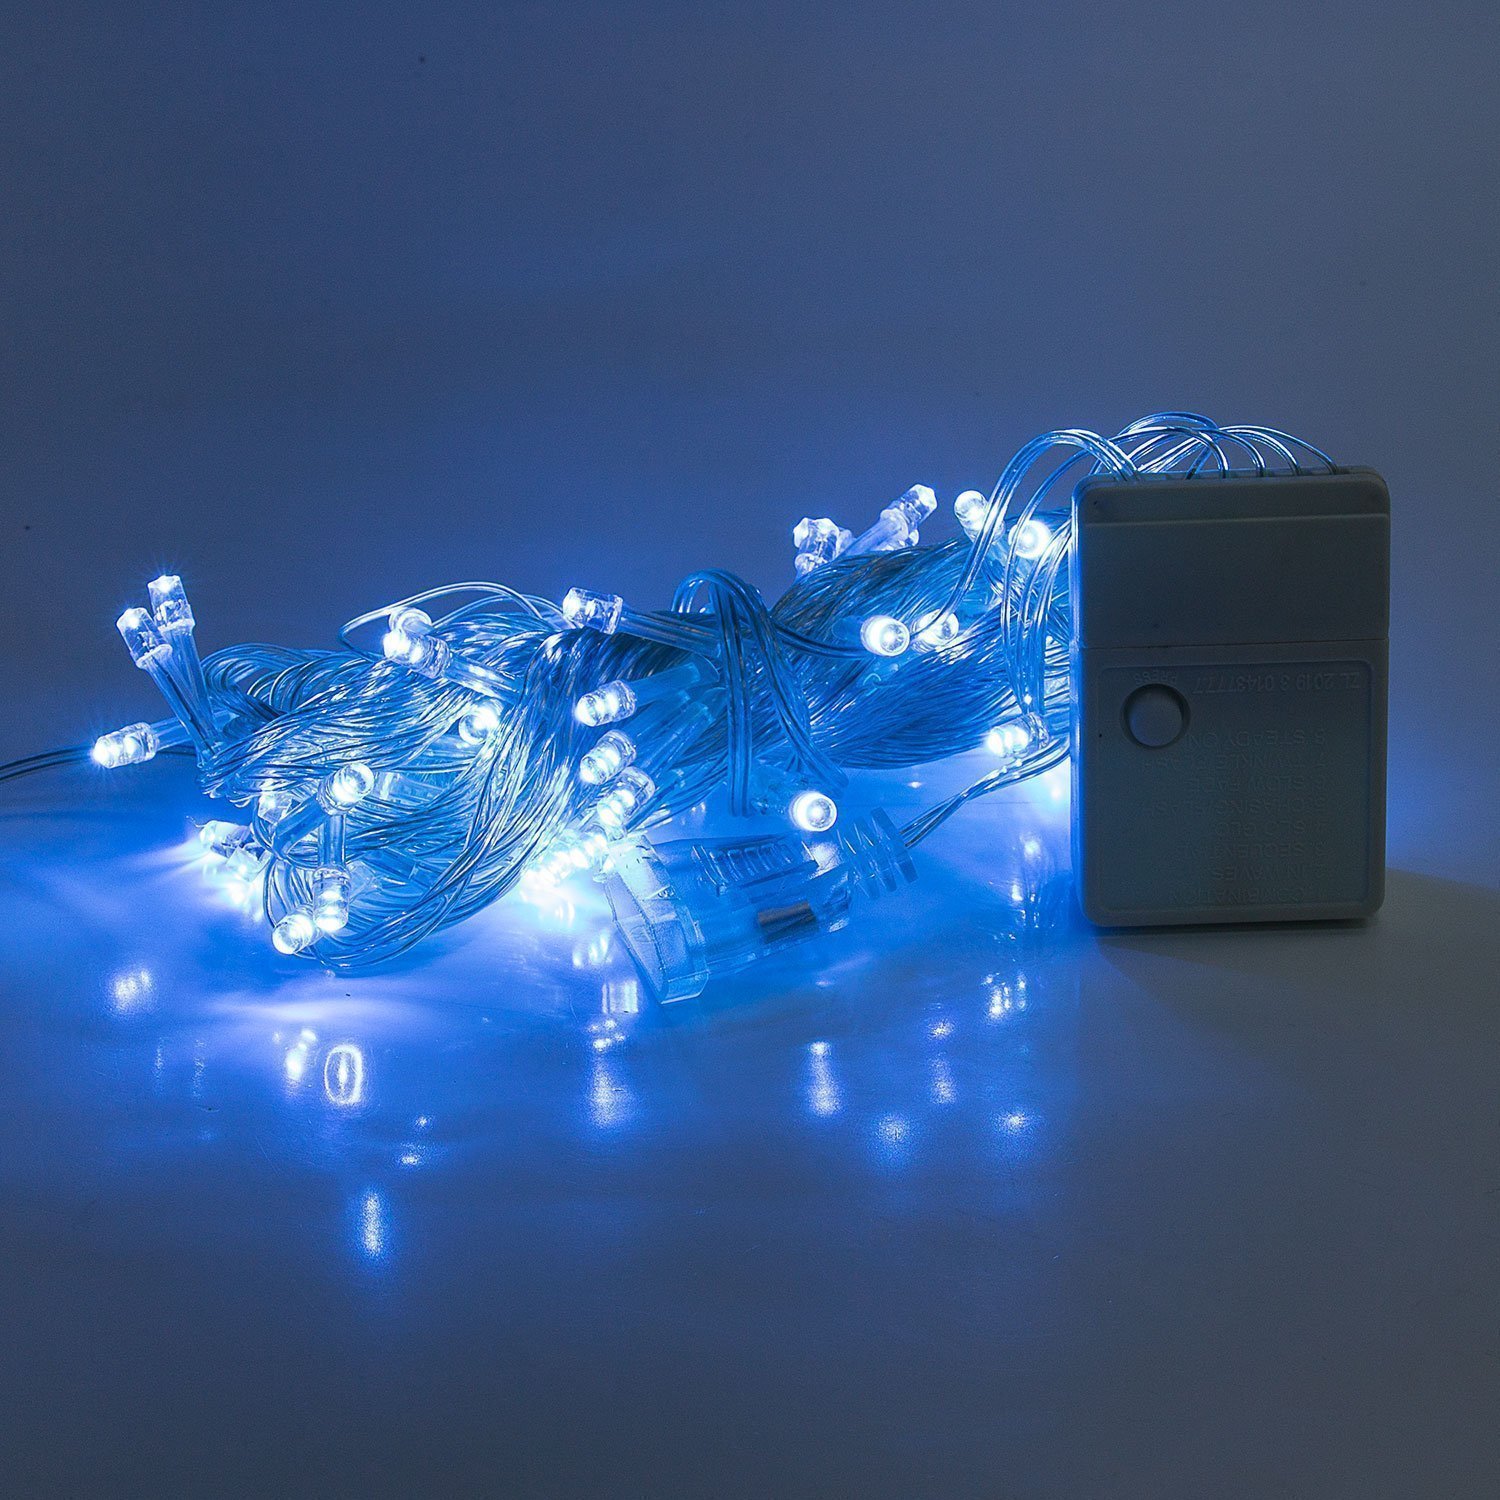 Гирлянда Kurato светодиодная нить, ламп: 60 шт., 6 м, режимов: 1, от сети, голубой (132721)